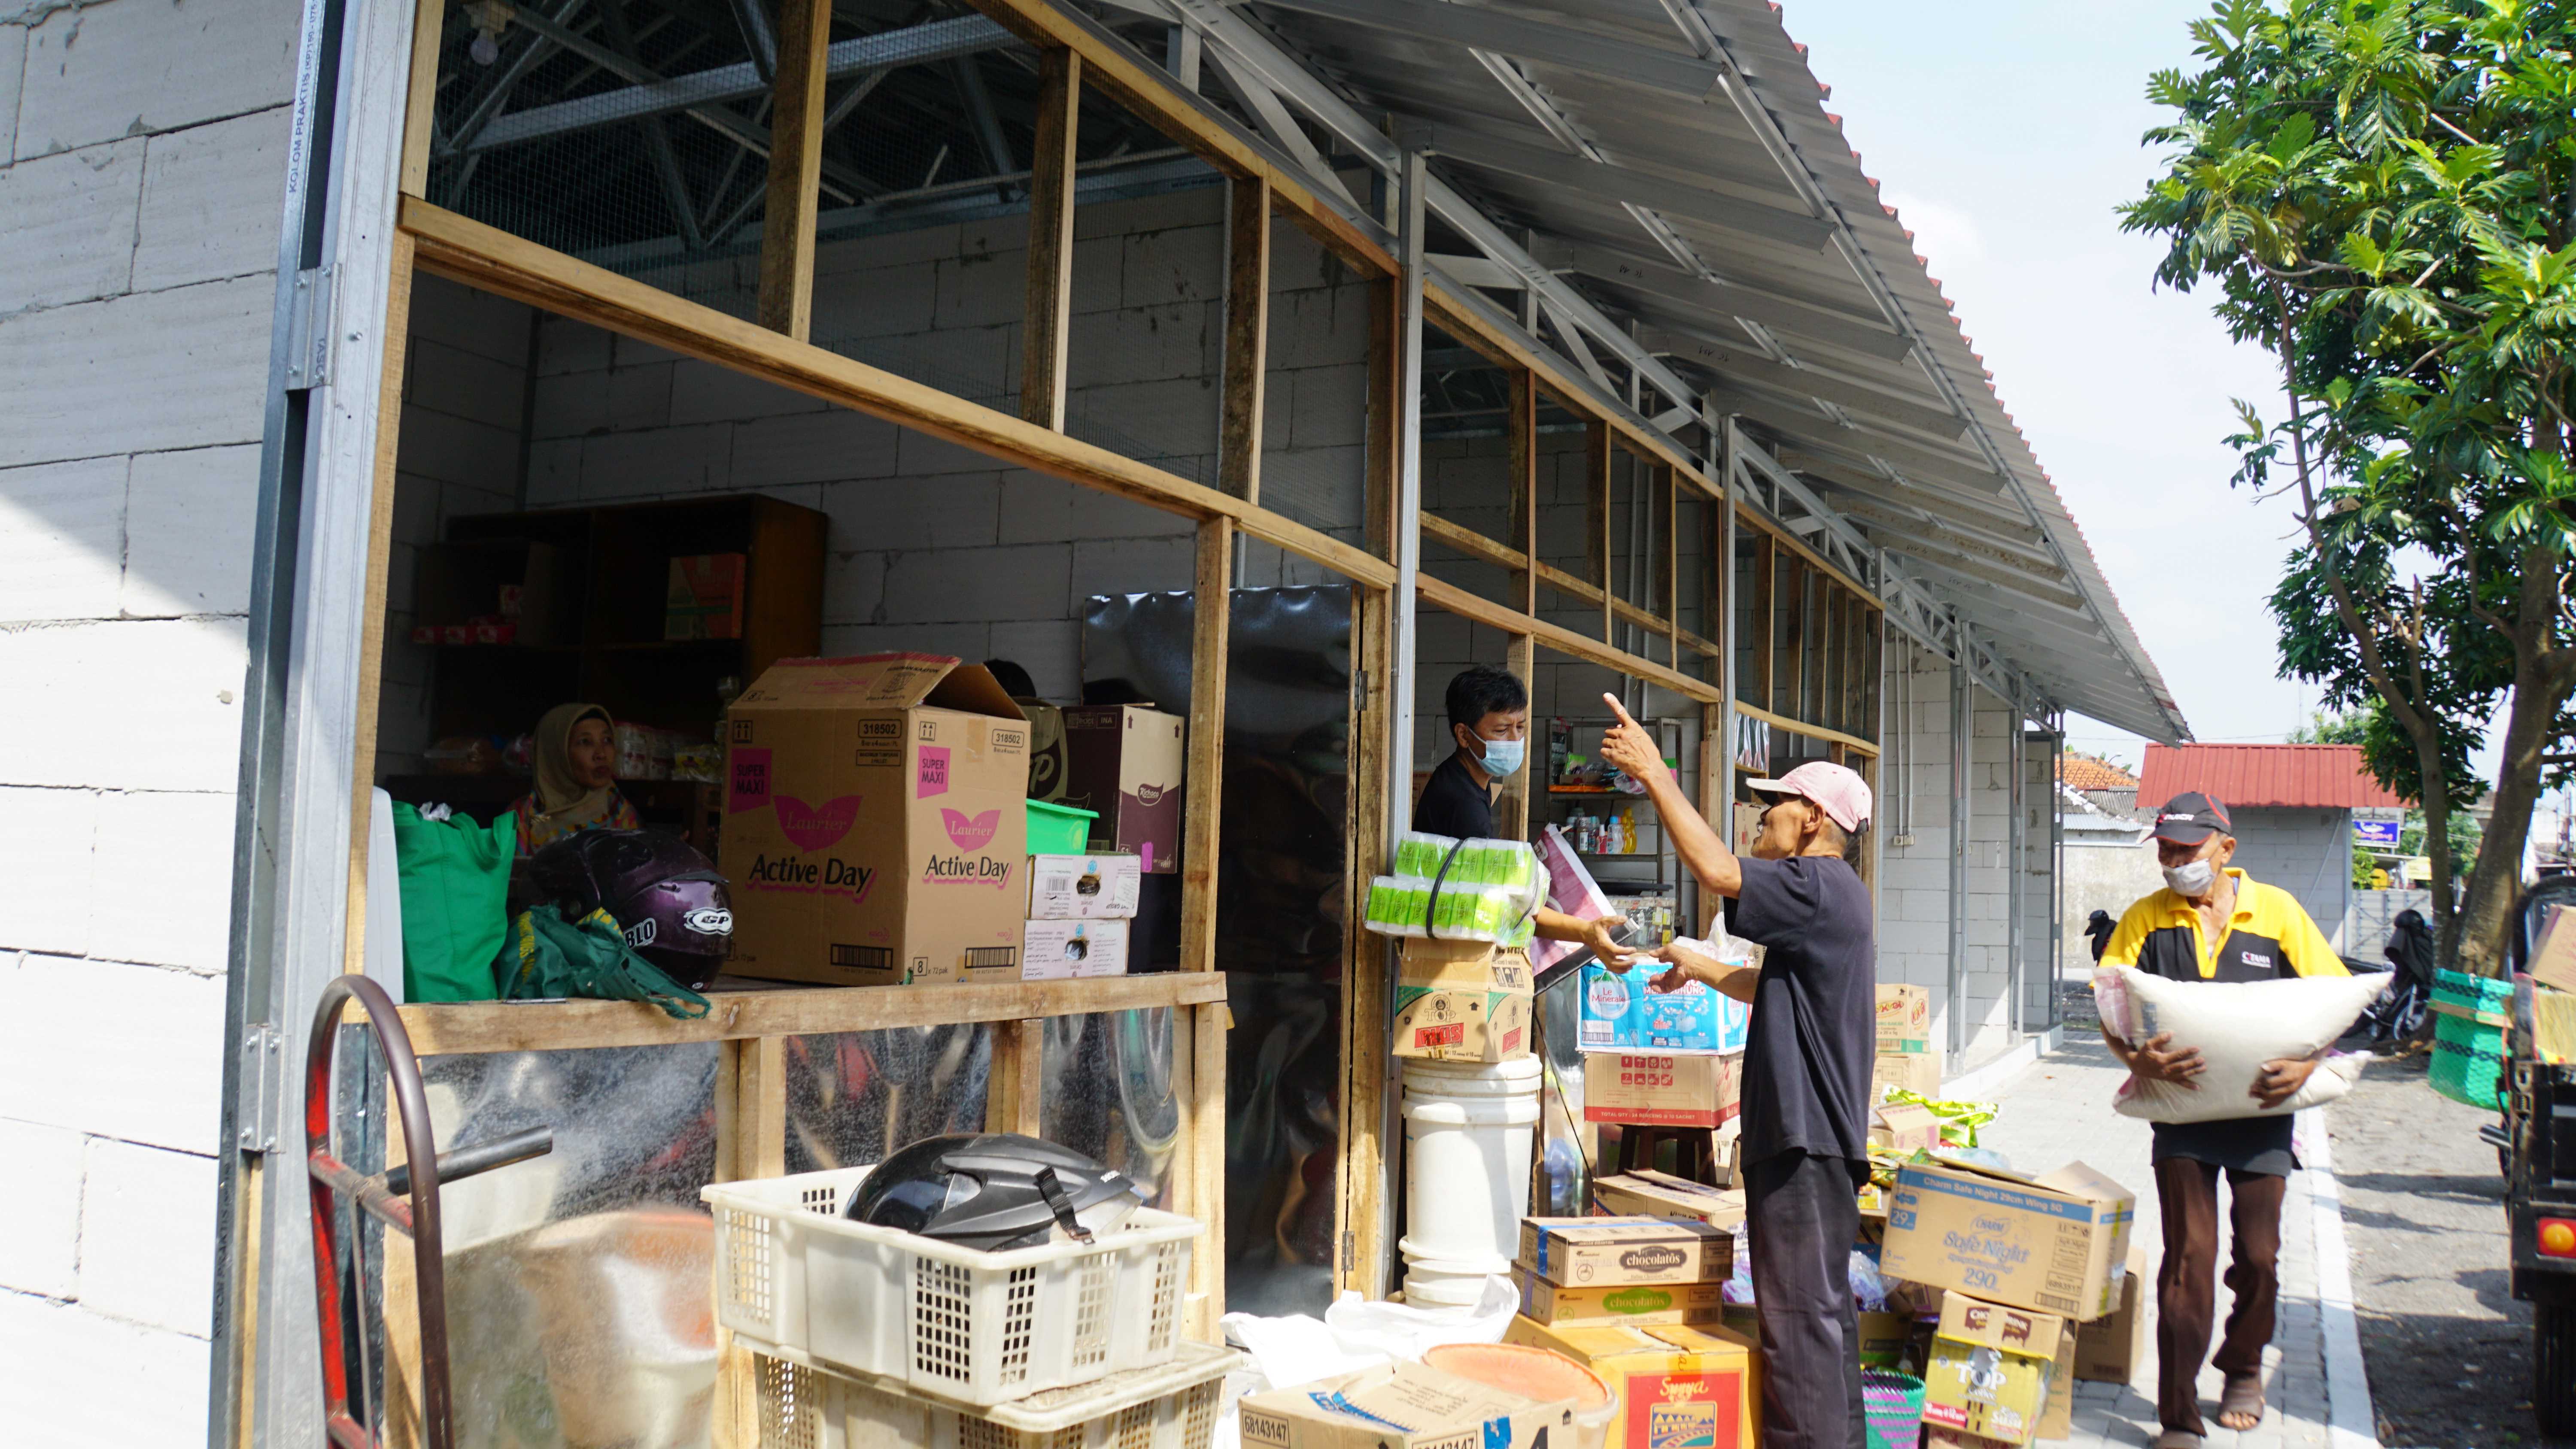 Pedagang Pasar Sentul Mulai Pindahan ke Shelter Sementara   